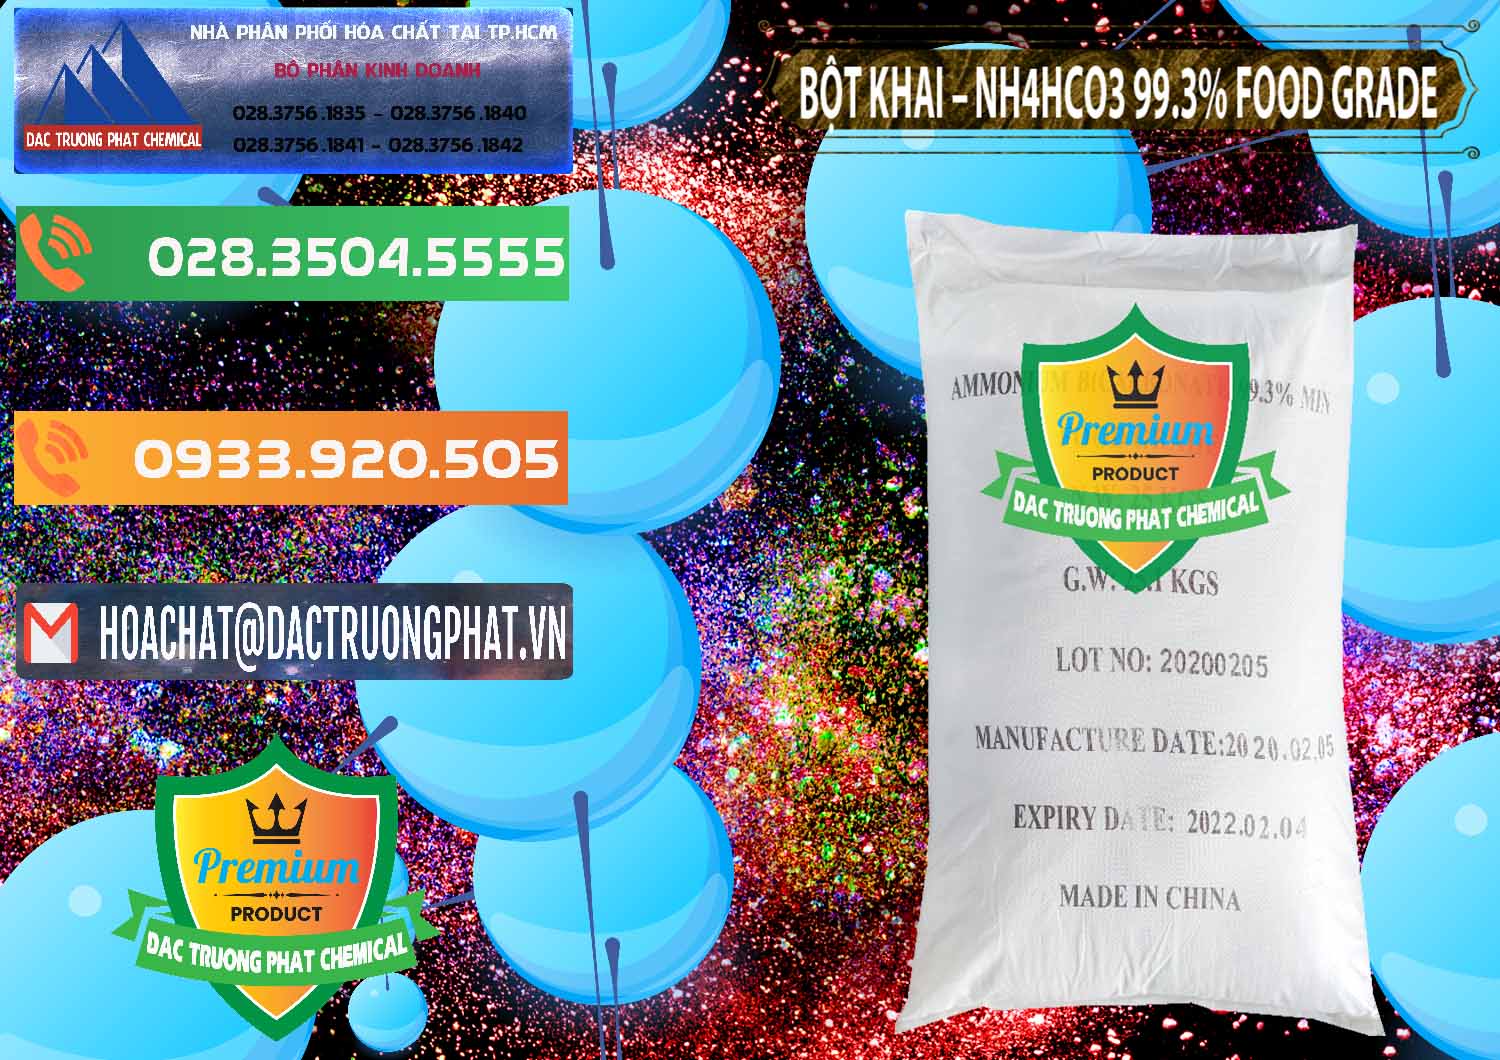 Nơi bán Ammonium Bicarbonate – Bột Khai NH4HCO3 Food Grade Trung Quốc China - 0019 - Cty kinh doanh và cung cấp hóa chất tại TP.HCM - hoachatxulynuoc.com.vn